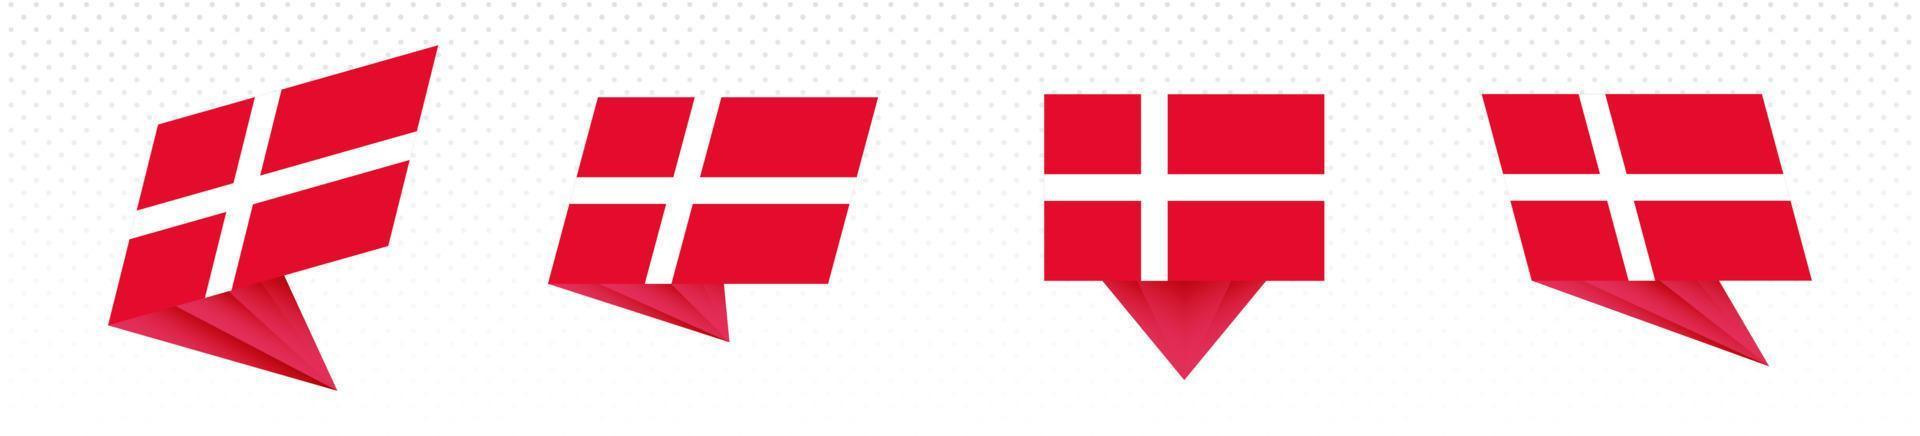 Flagge Dänemarks im modernen abstrakten Design, Flaggensatz. vektor